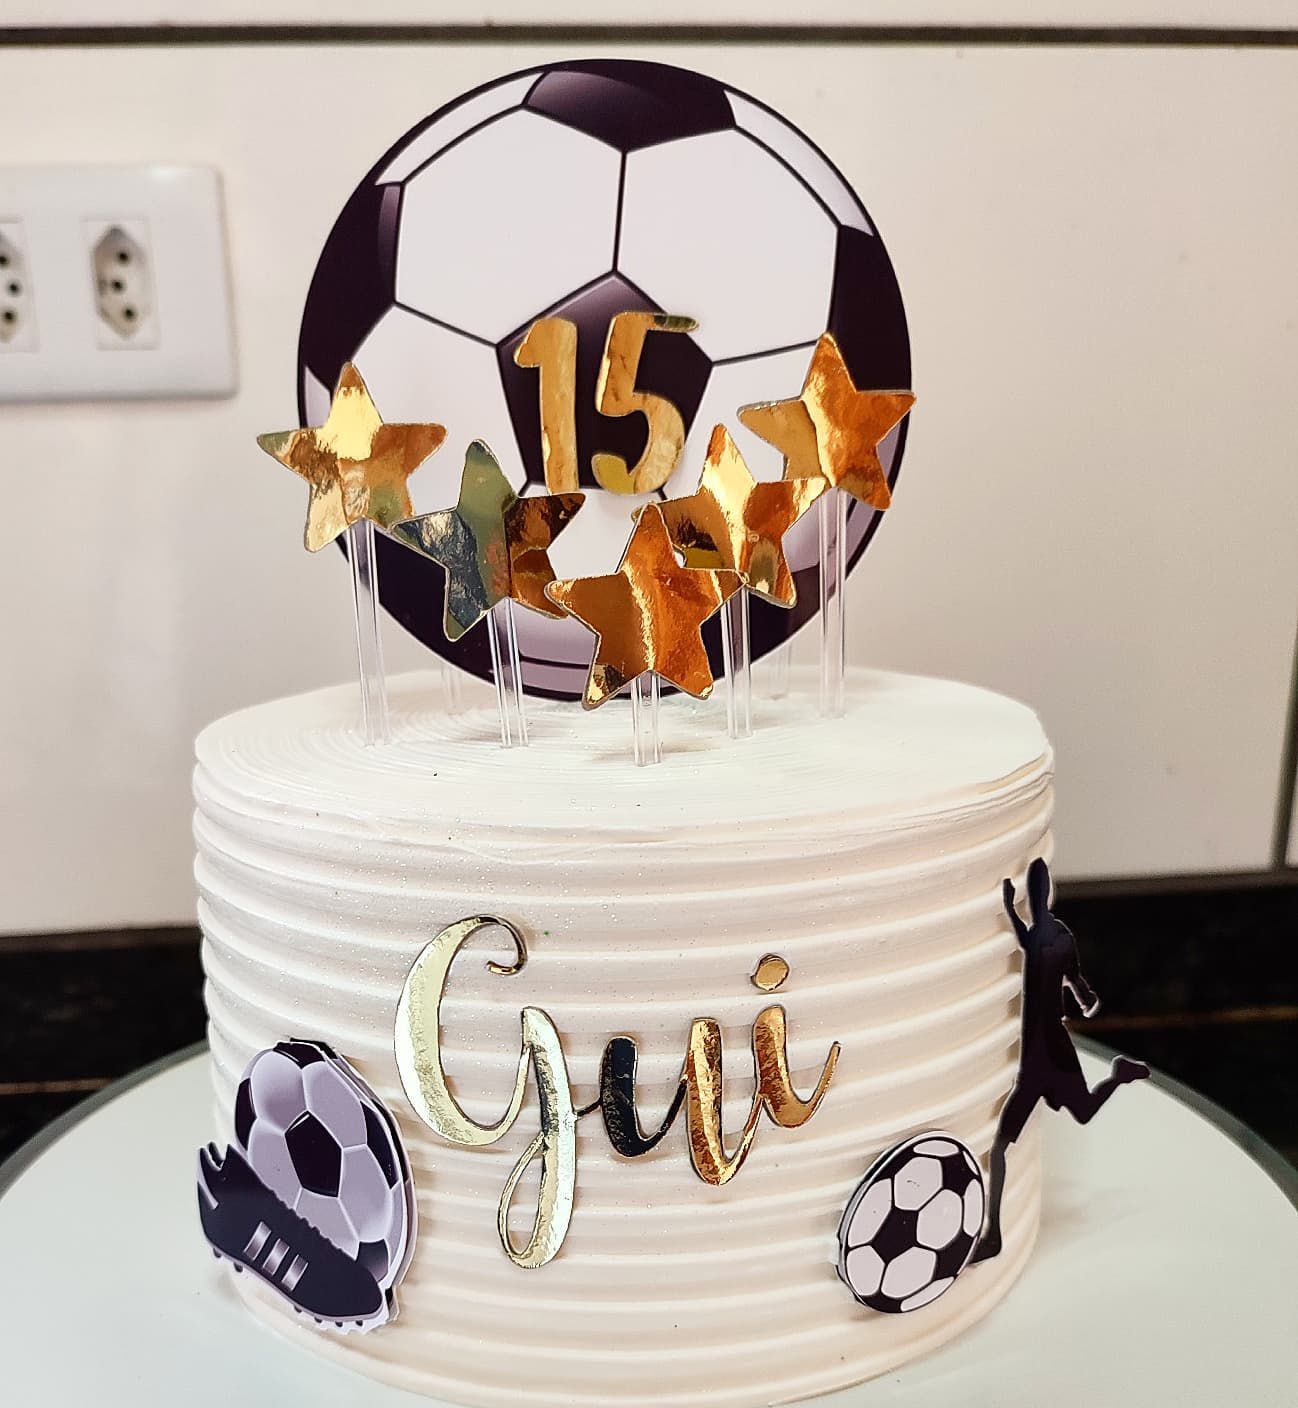 Topo de bolo time Corinthians feminino - Marlen personalizados